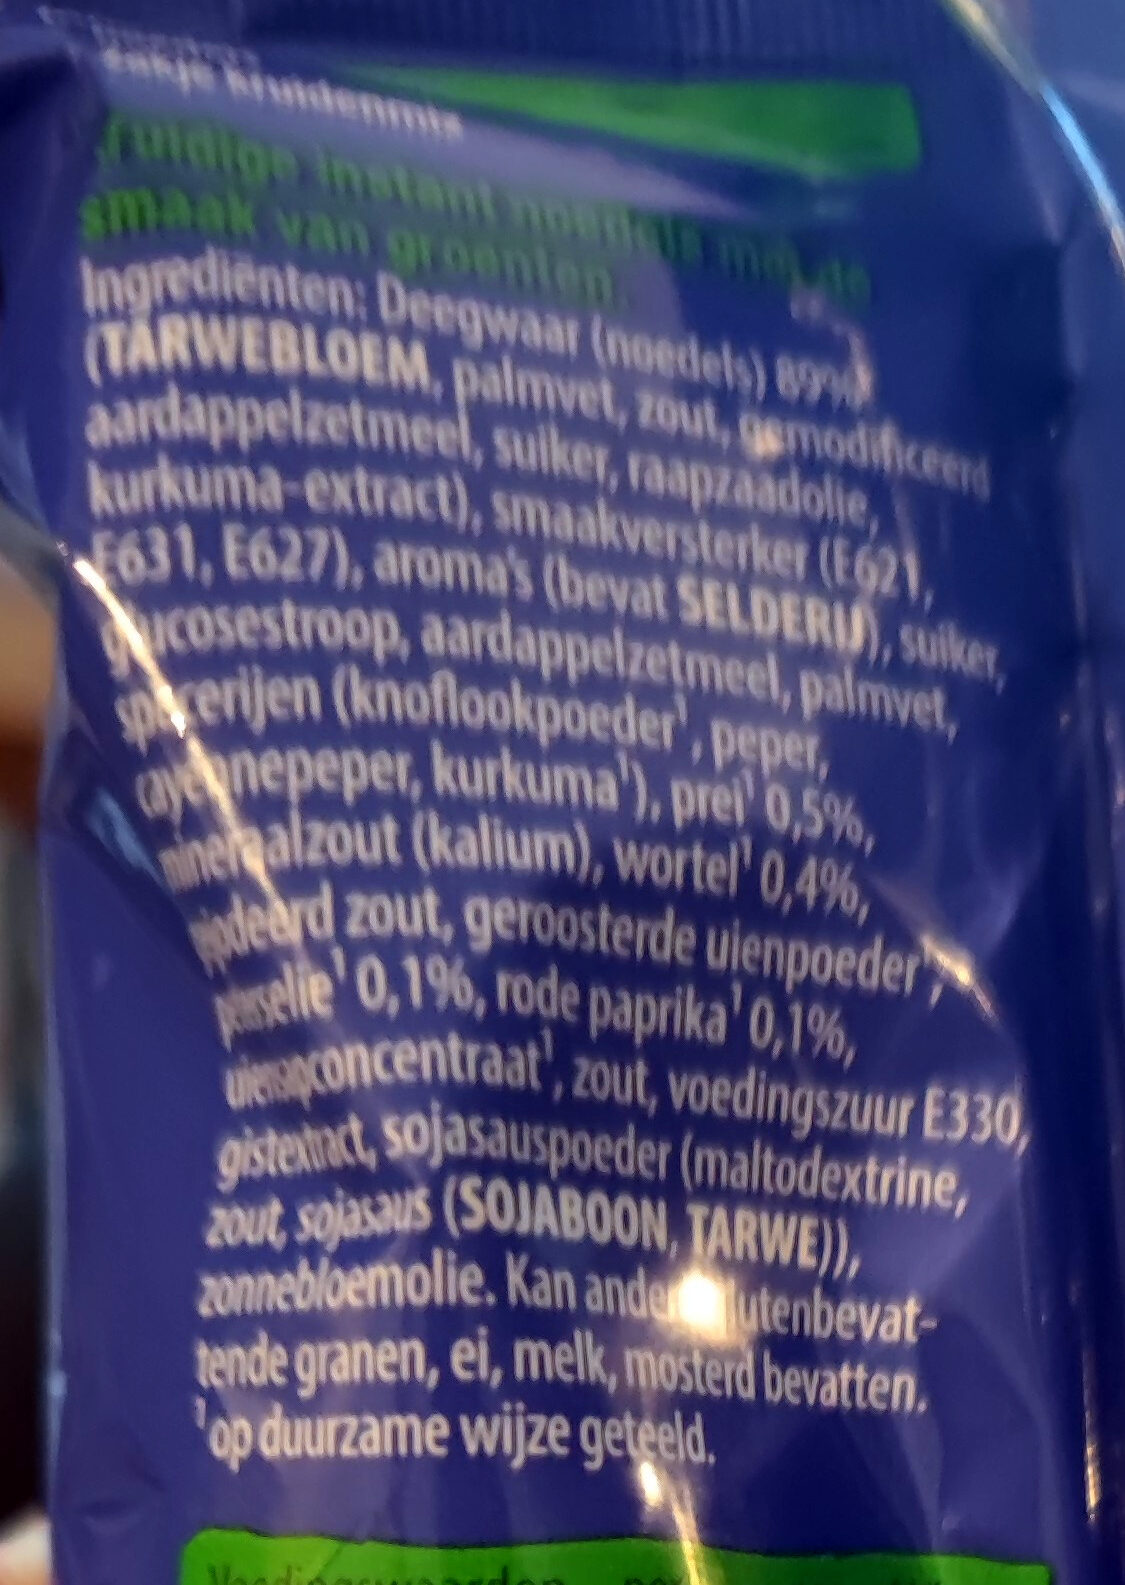 Good noodles groenten - Ingredients - nl